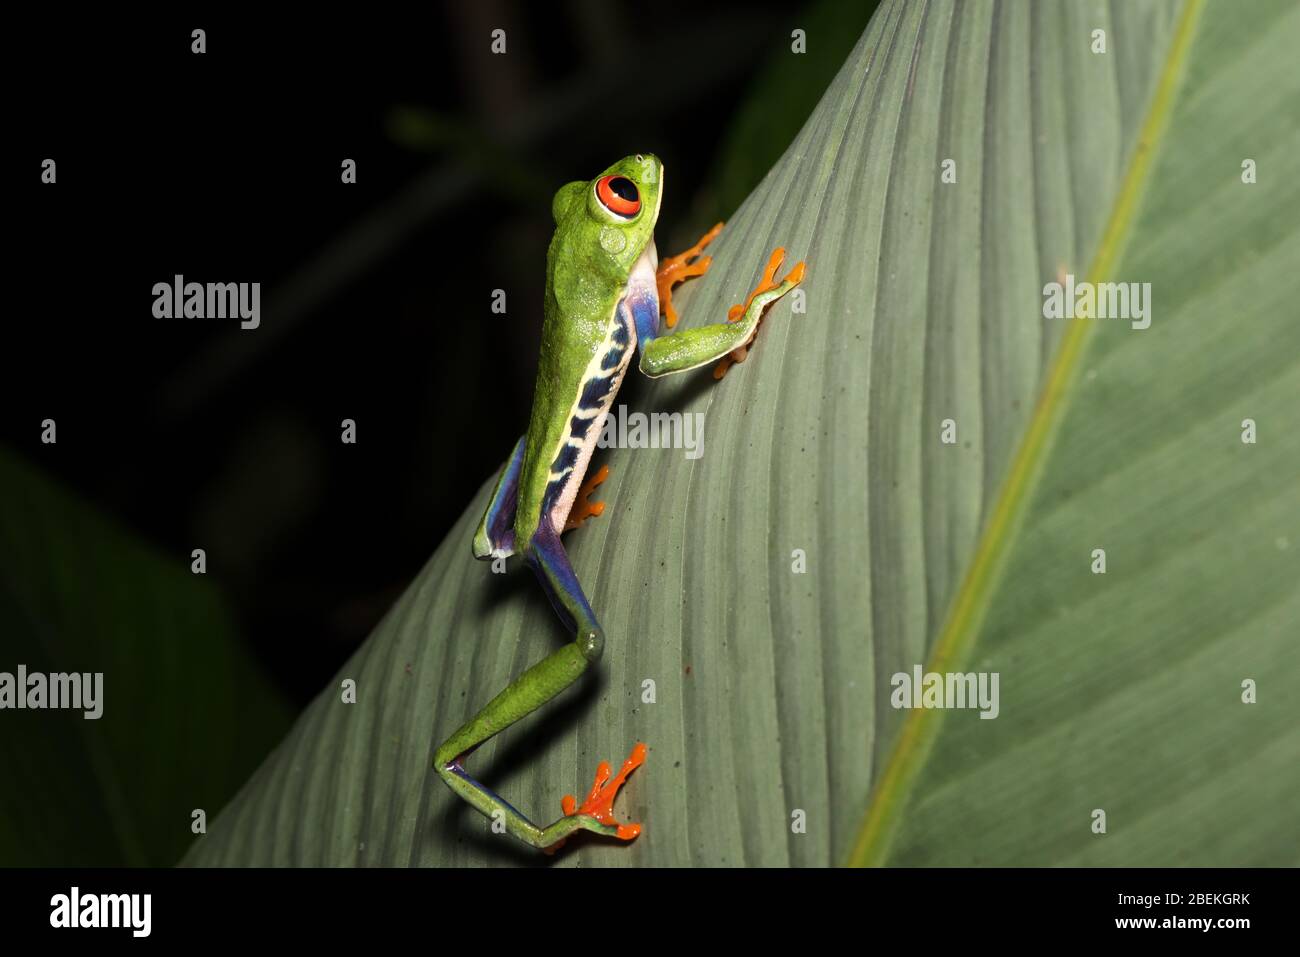 Photographie nocturne d'une grenouille d'arbre à yeux rouges ou d'une grenouille de feuilles ou d'une grenouille de feuilles de Gaudy (Agalychnis callidryas) posant sur une tige d'une plante tropicale. Costa Rica. Banque D'Images